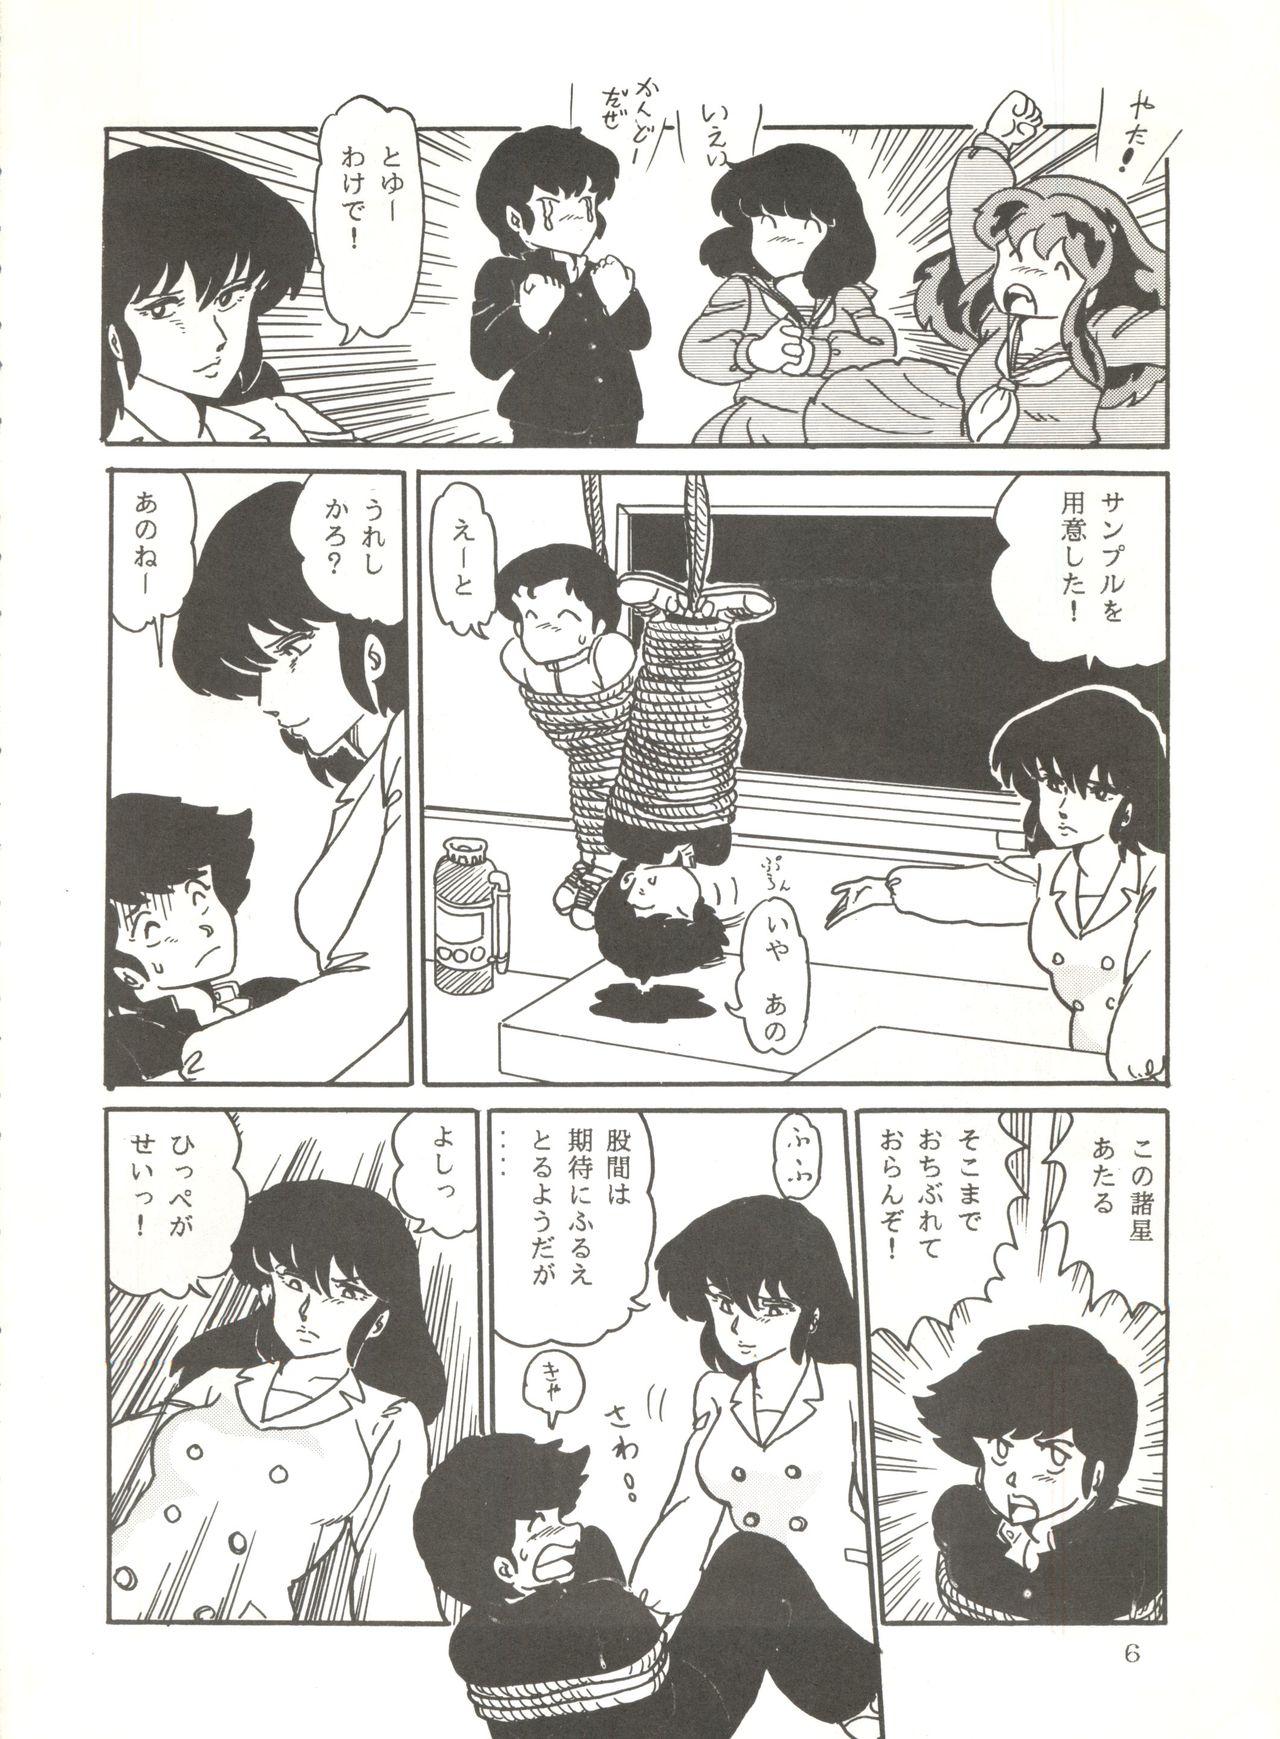 Movie Shijou Saiaku no Lum 4 - Urusei yatsura Cam Sex - Page 5